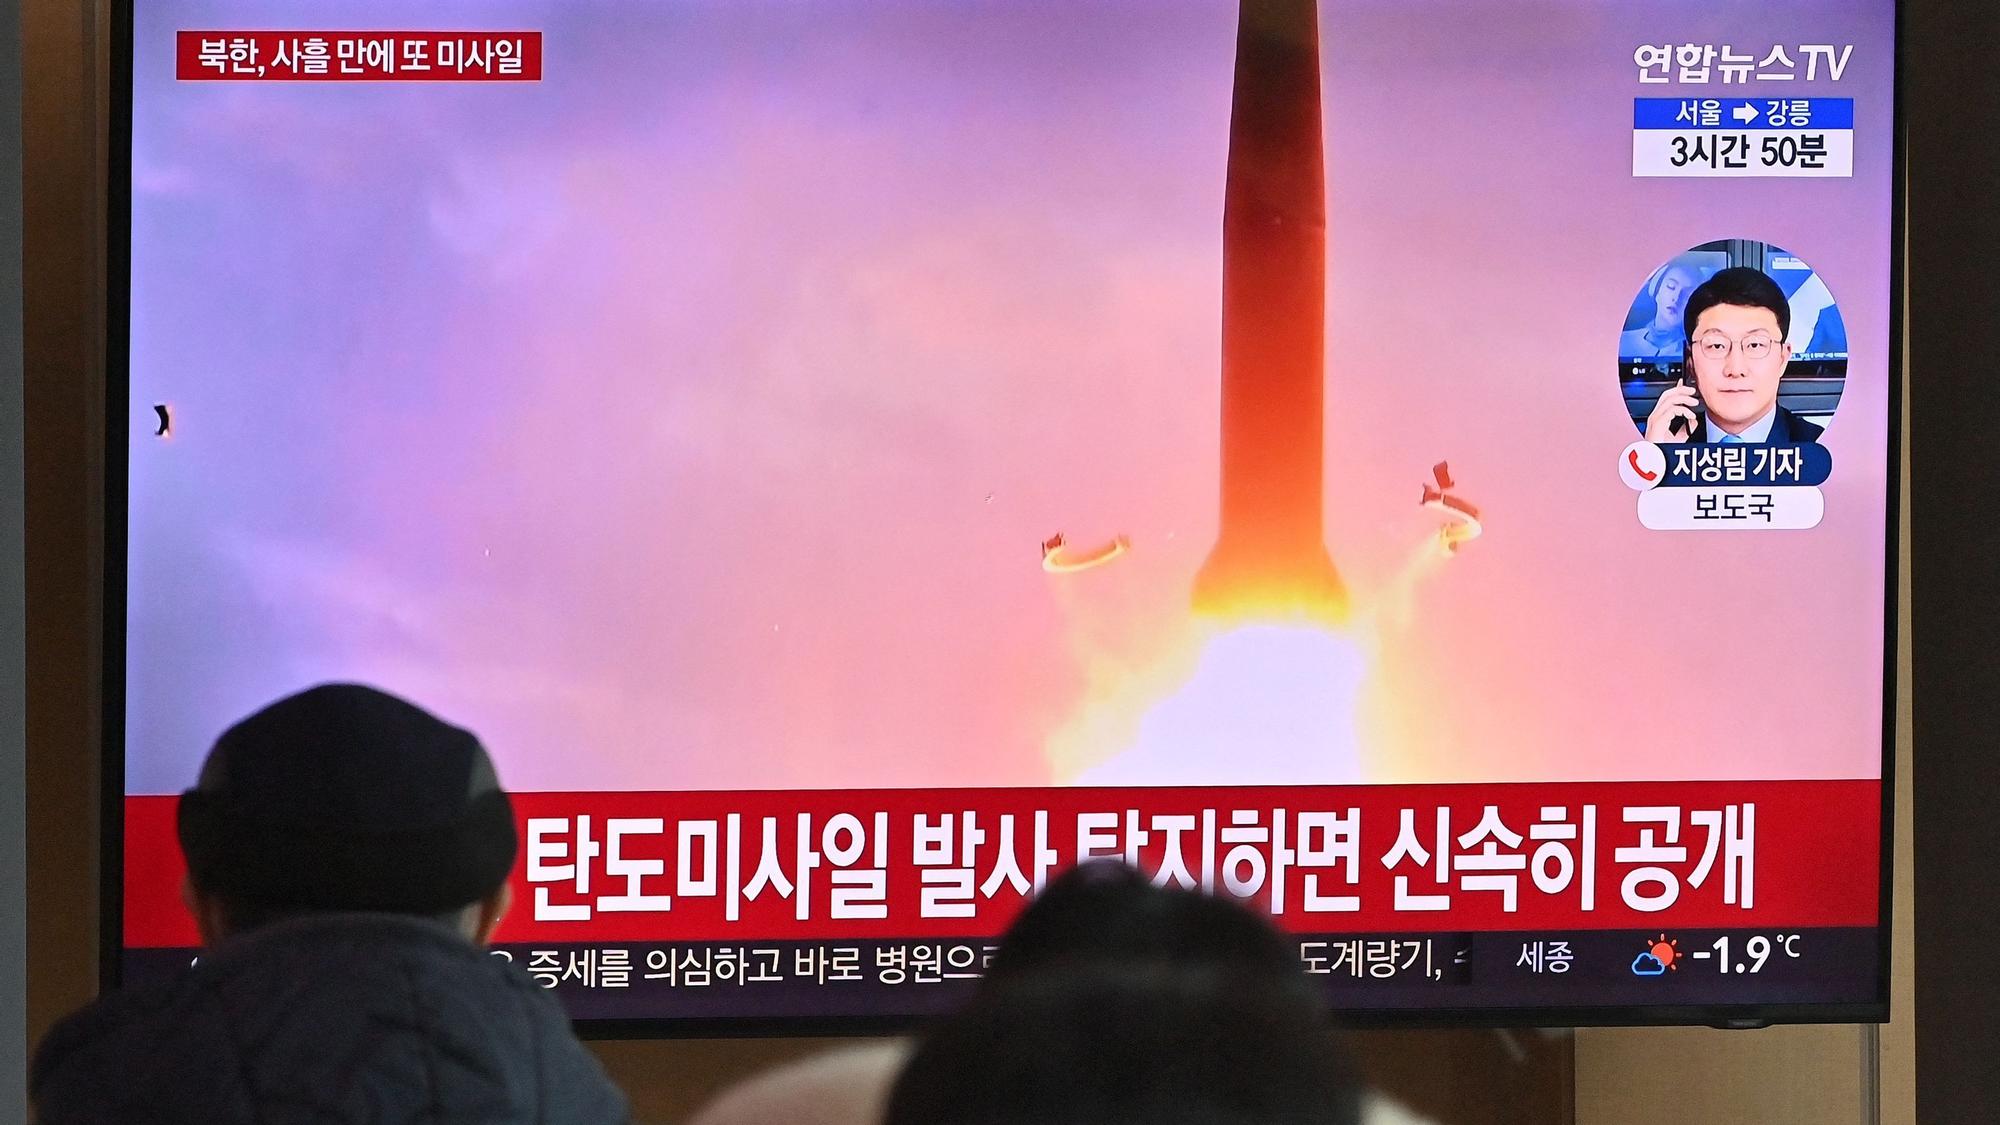 Un grupo de gente mirando televisión el lanzamiento de un mísil en Corea del Norte.